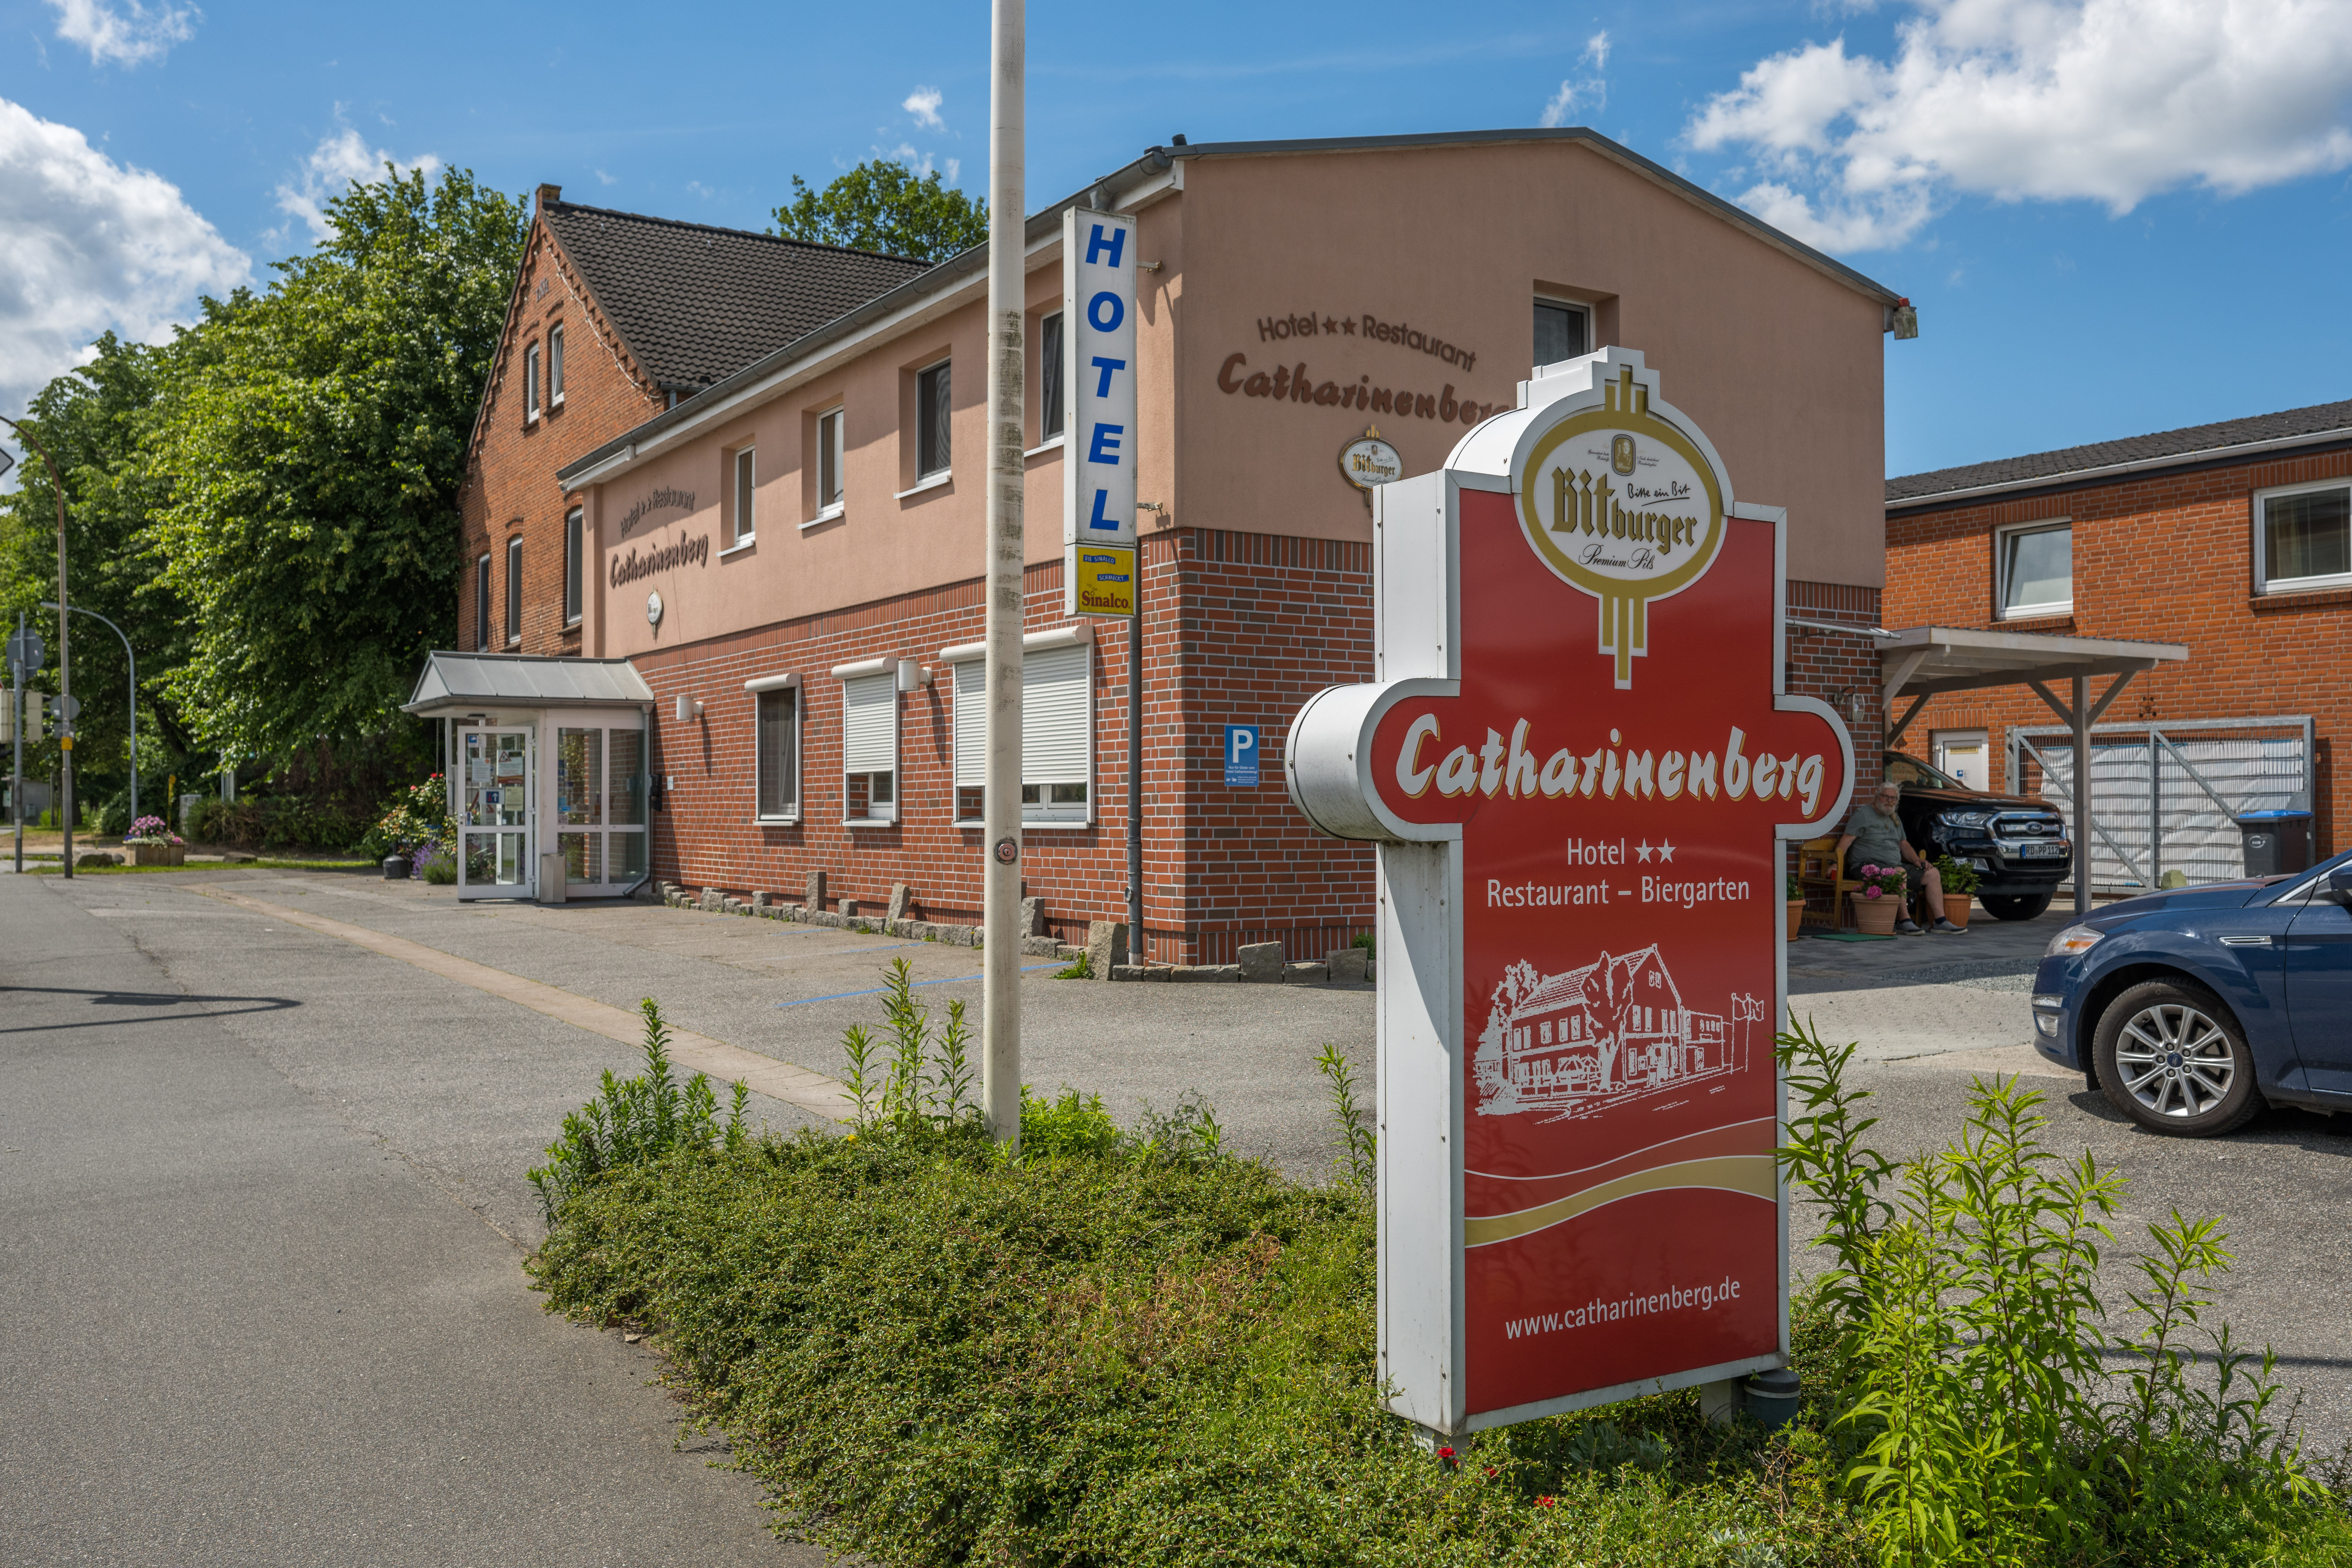 Catharinenberg hotel restaurant biergarten